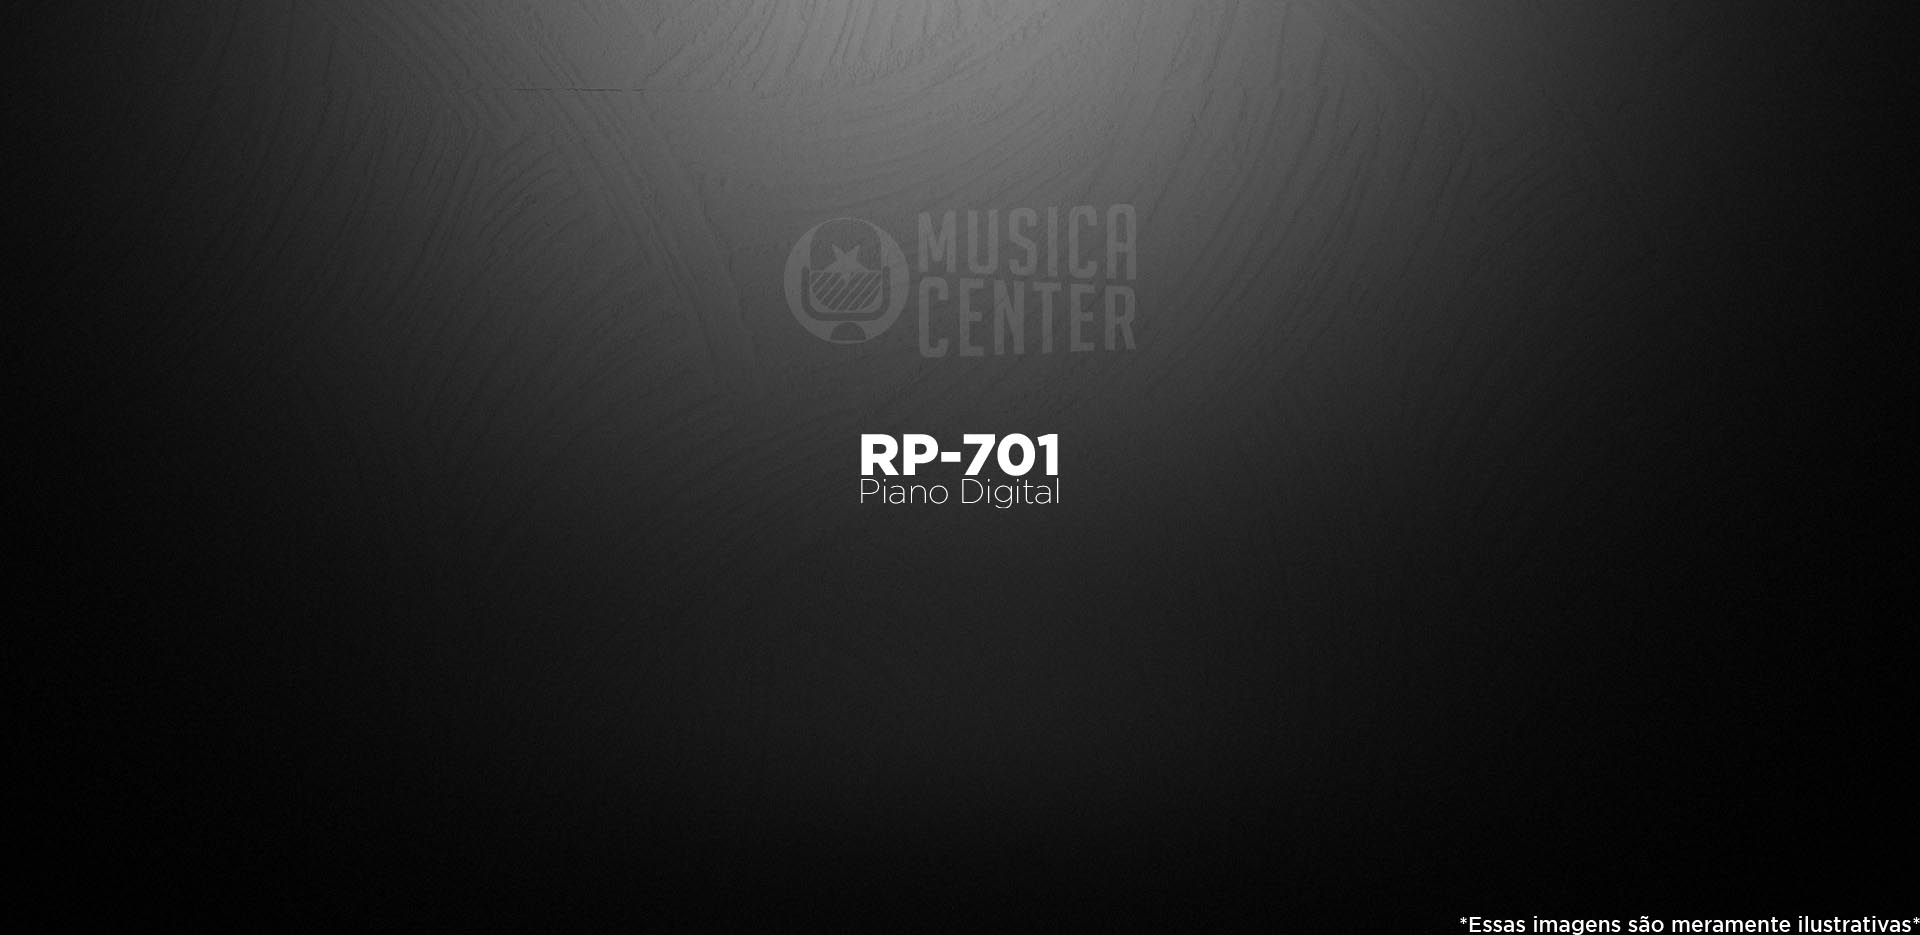 Piano Digital Roland RP701 Sob Encomenda na Musica Center